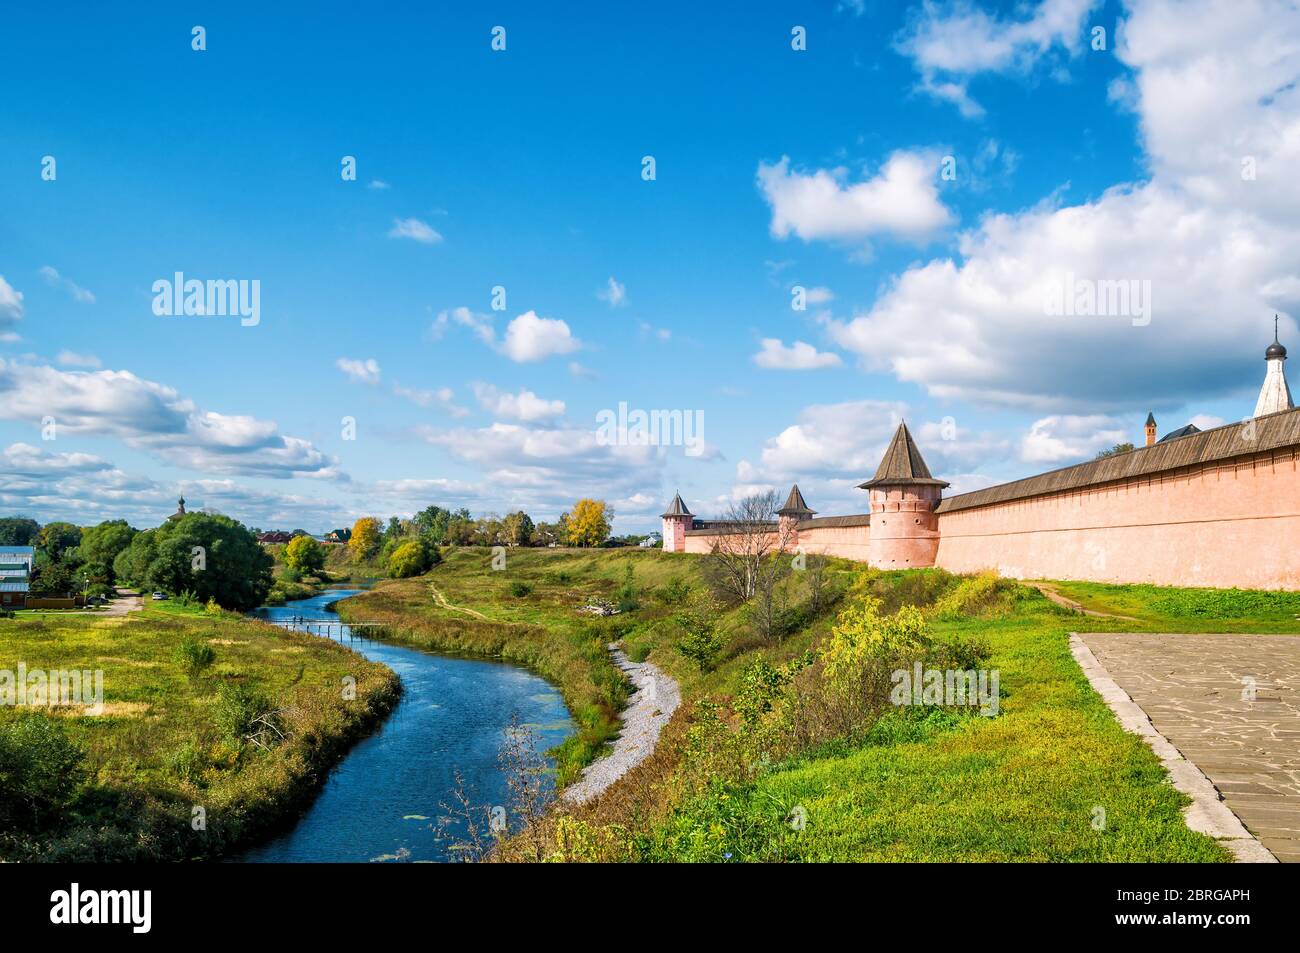 Panorama de la ville antique de Suzdal, Russie. Monastère de Saint-Euthymius. Suzdal est le site de l'anneau d'or de Russie. Banque D'Images